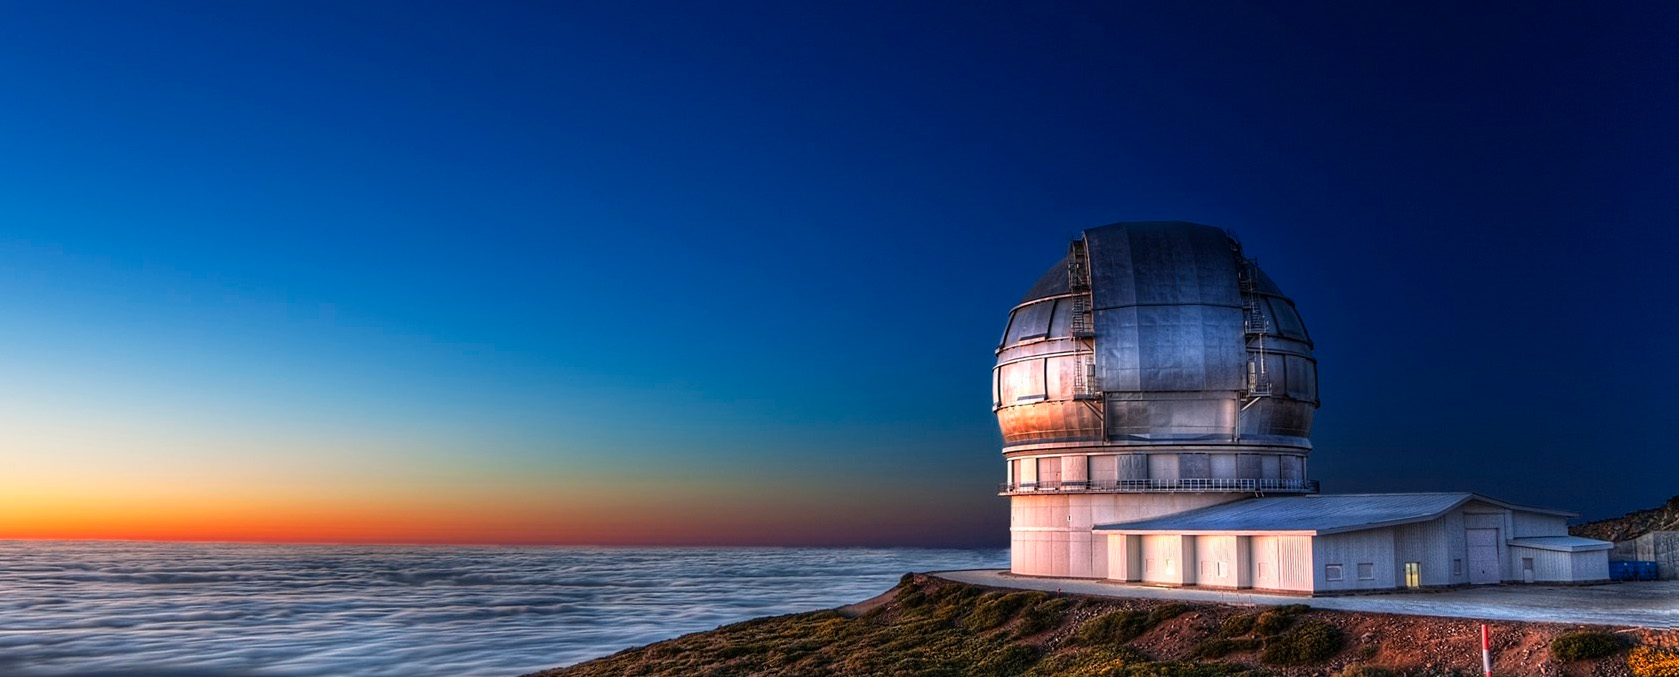 WEAVE - El Telescopio Que Desvelara Los Secretos Del Cosmos 111